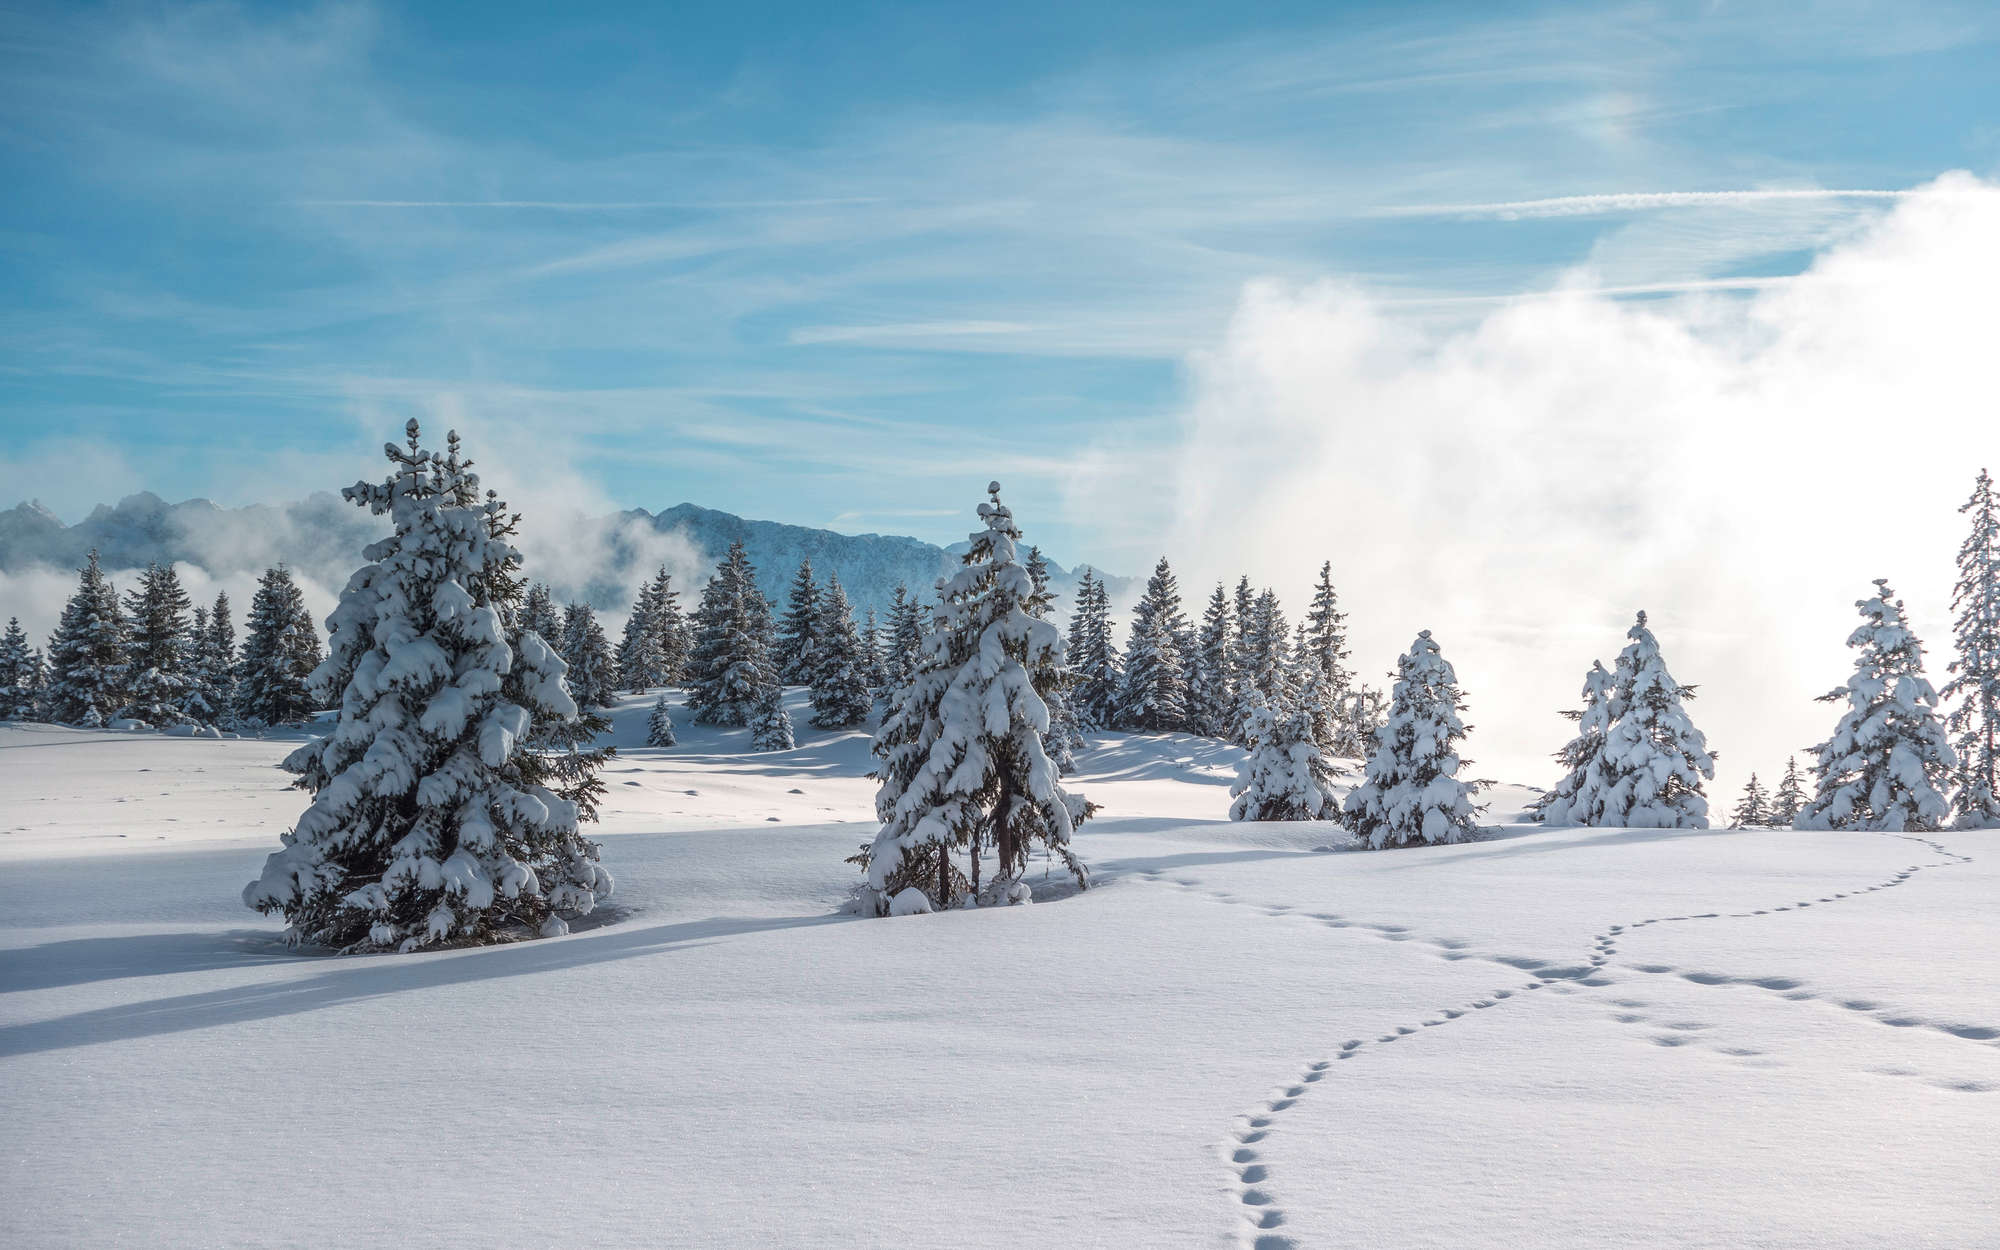             Fotomural nieve y huellas en el bosque de invierno - nácar liso
        